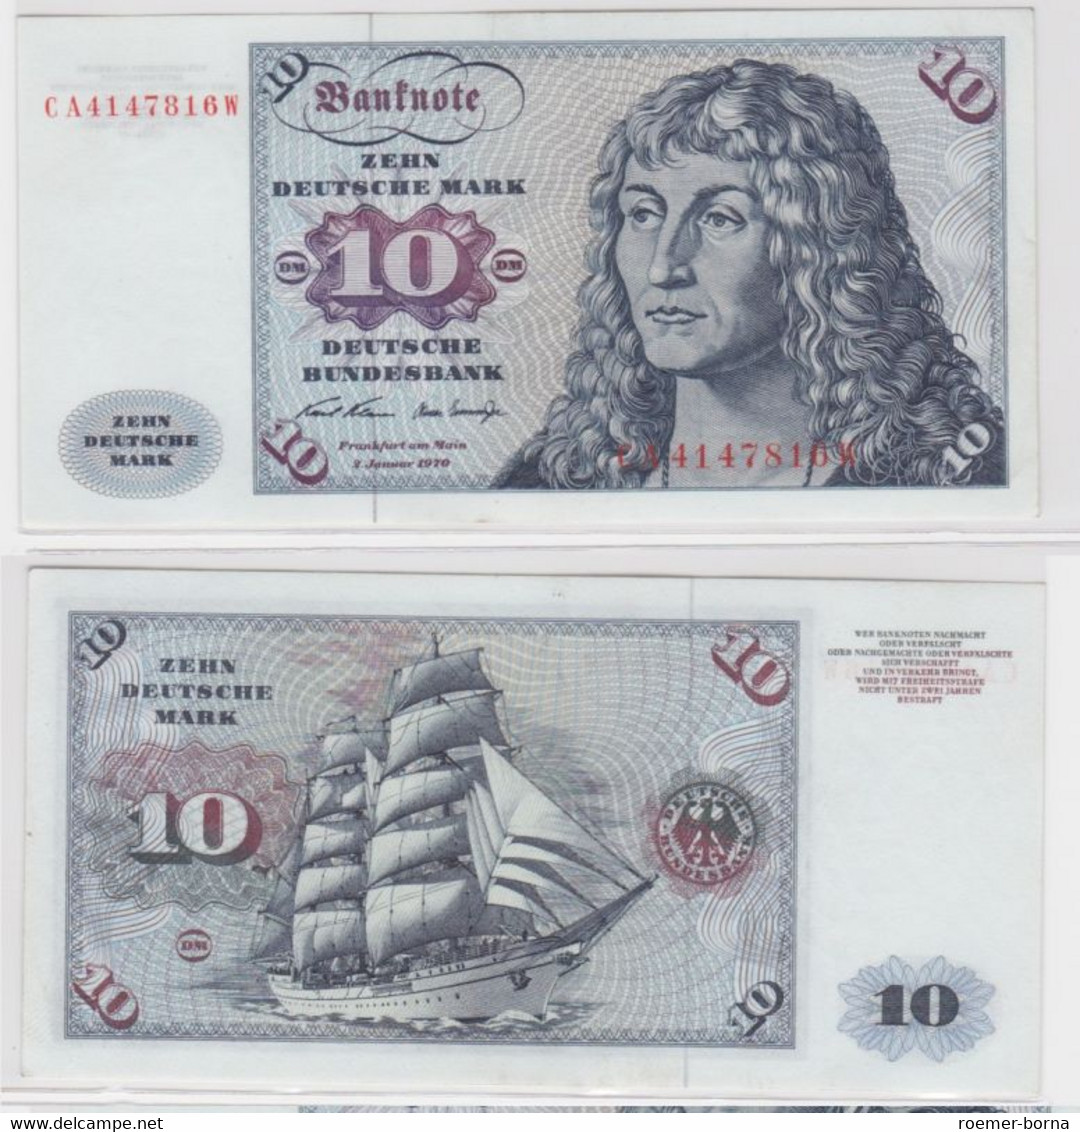 T144673 Banknote 10 DM Deutsche Mark Ro. 270a Schein 2.Jan. 1970 KN CA 4147816 W - 10 Deutsche Mark